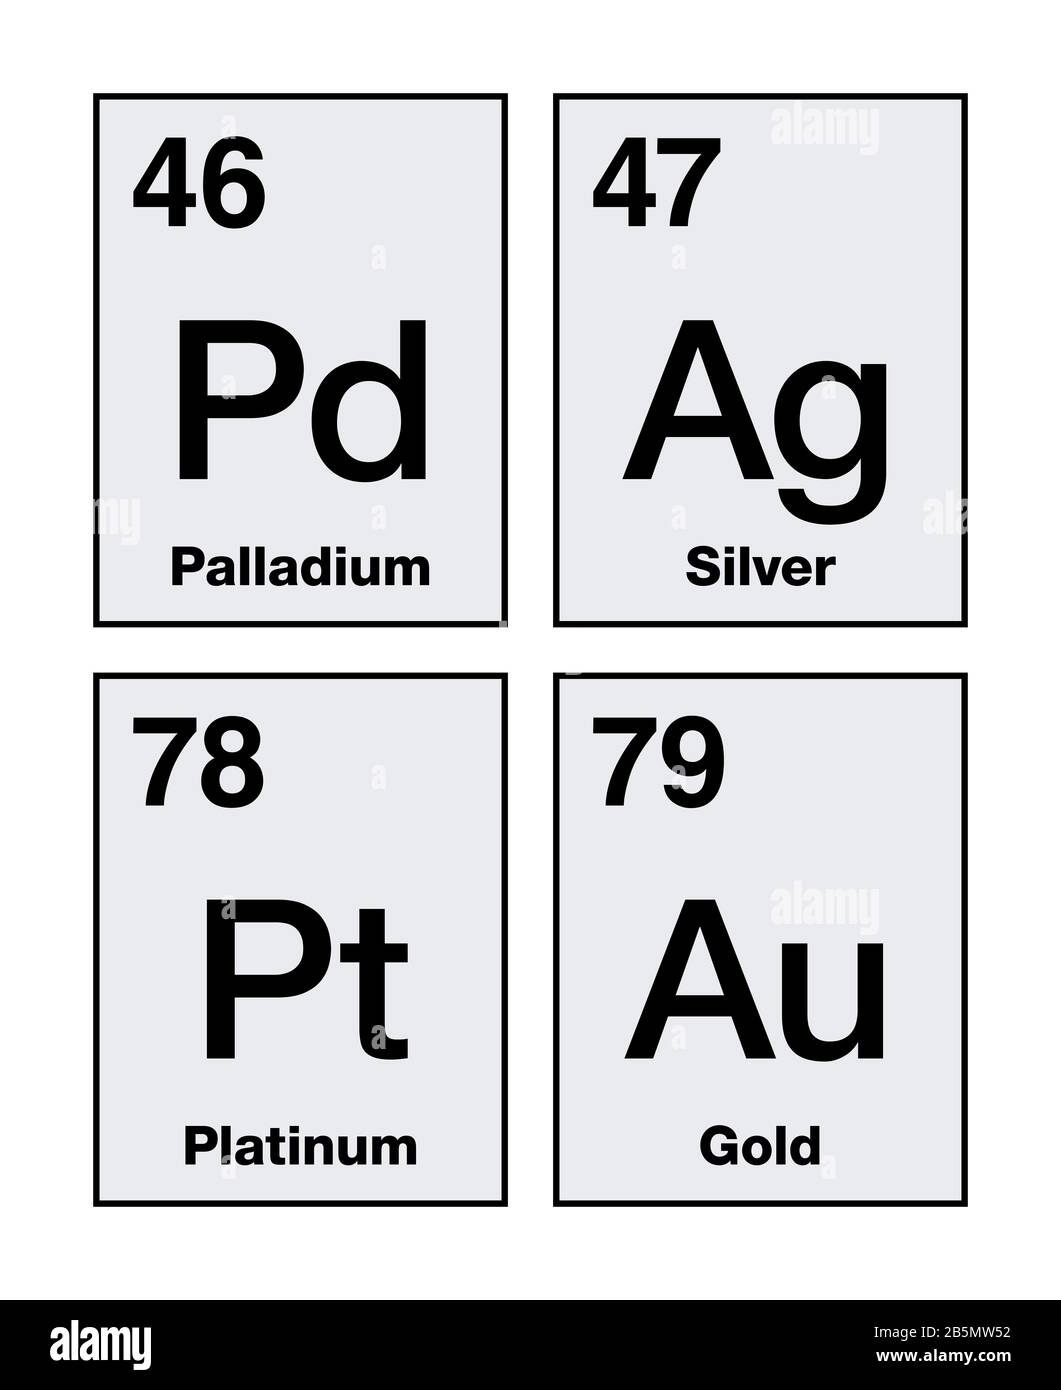 Oro, argento, platino e palladio su tavola periodica. Metalli preziosi, elementi chimici ad alto valore economico, utilizzati anche come valuta. Foto Stock